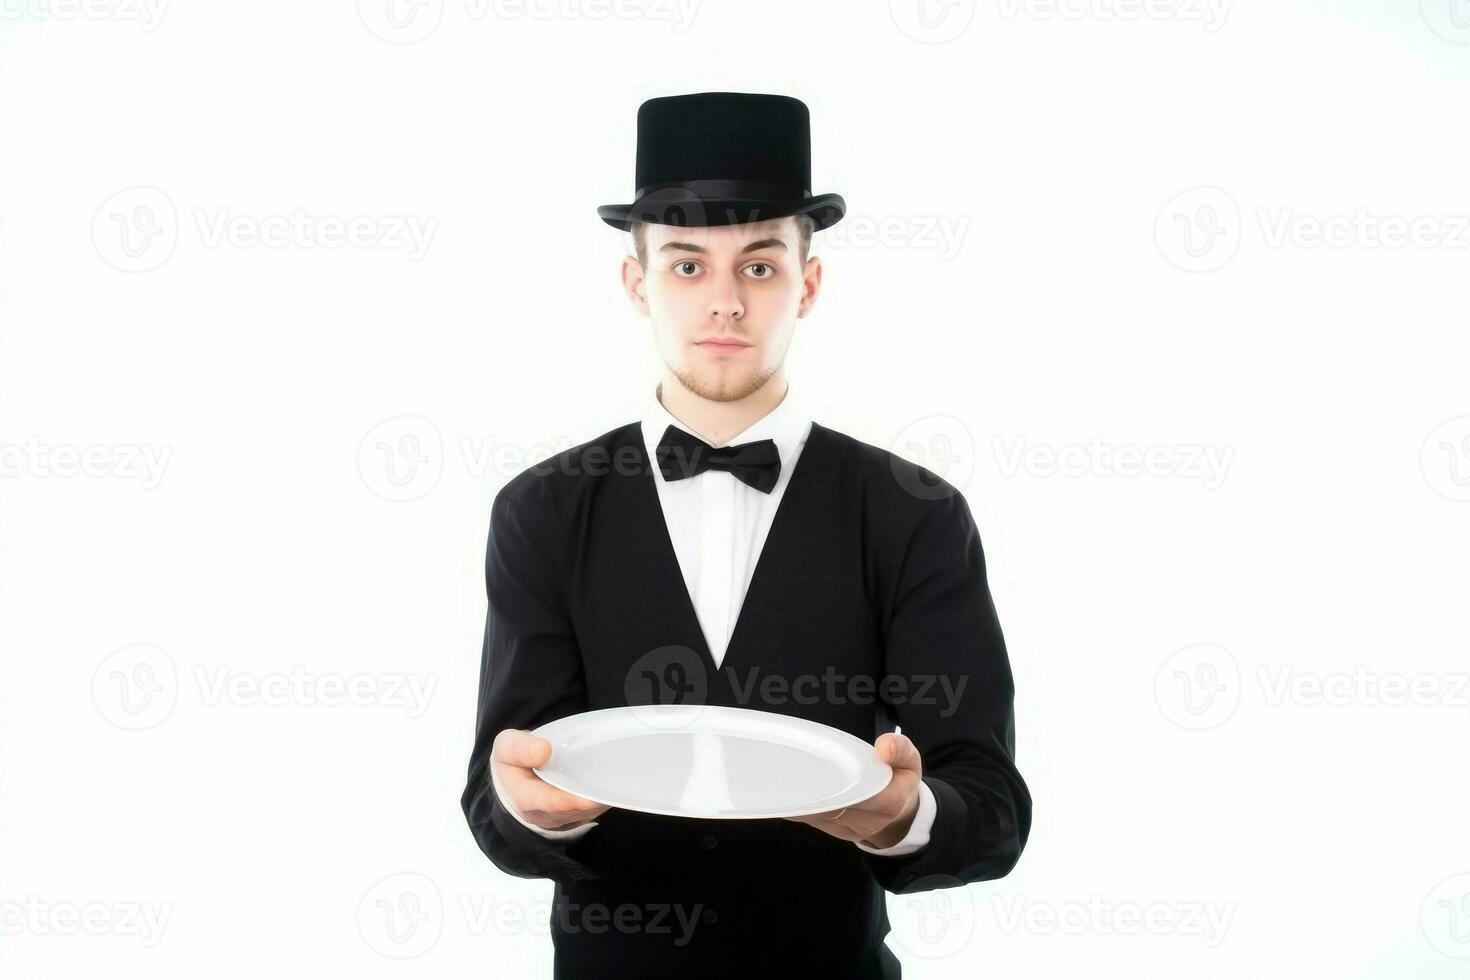 Cameriere superiore cappello vuoto vassoio. creare ai foto